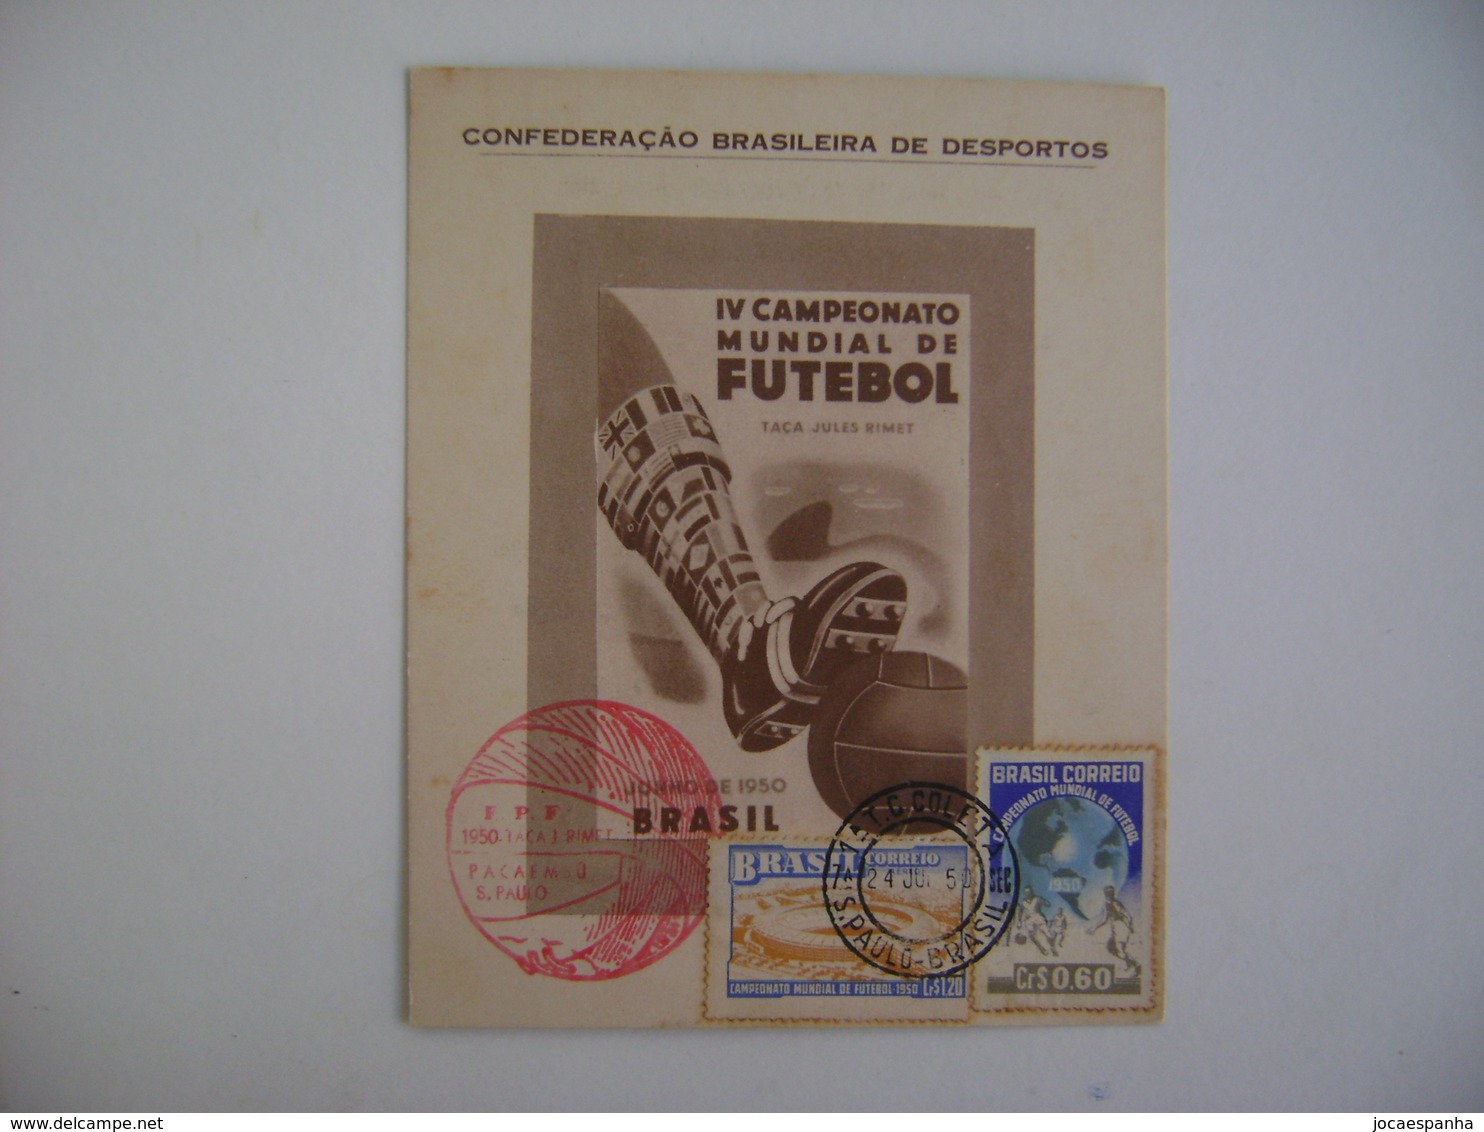 BRAZIL / BRASIL - MAXIMUN TYPE COMMEMORATIVE SHEET WORLD FOOTBALL SOCCER CHAMPIONSHIP 24-6-1950 IN THE STATE - 1950 – Brasilien